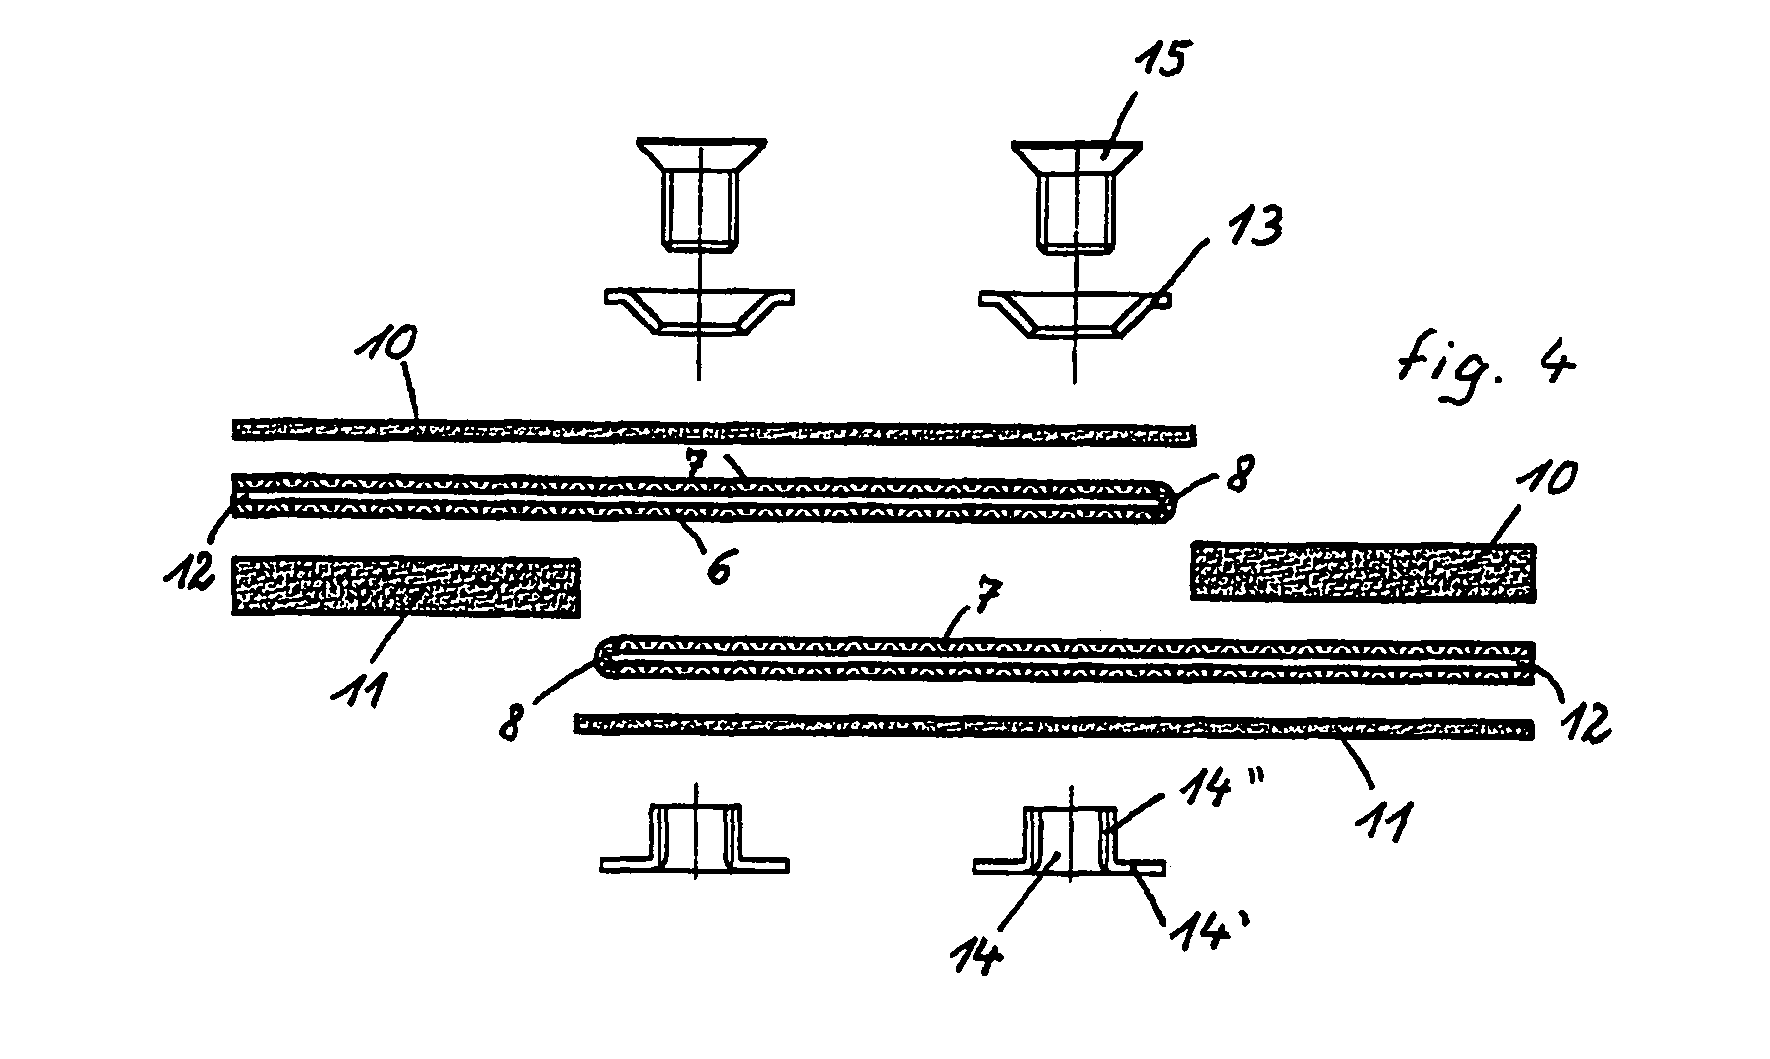 Conveyor belt junction element